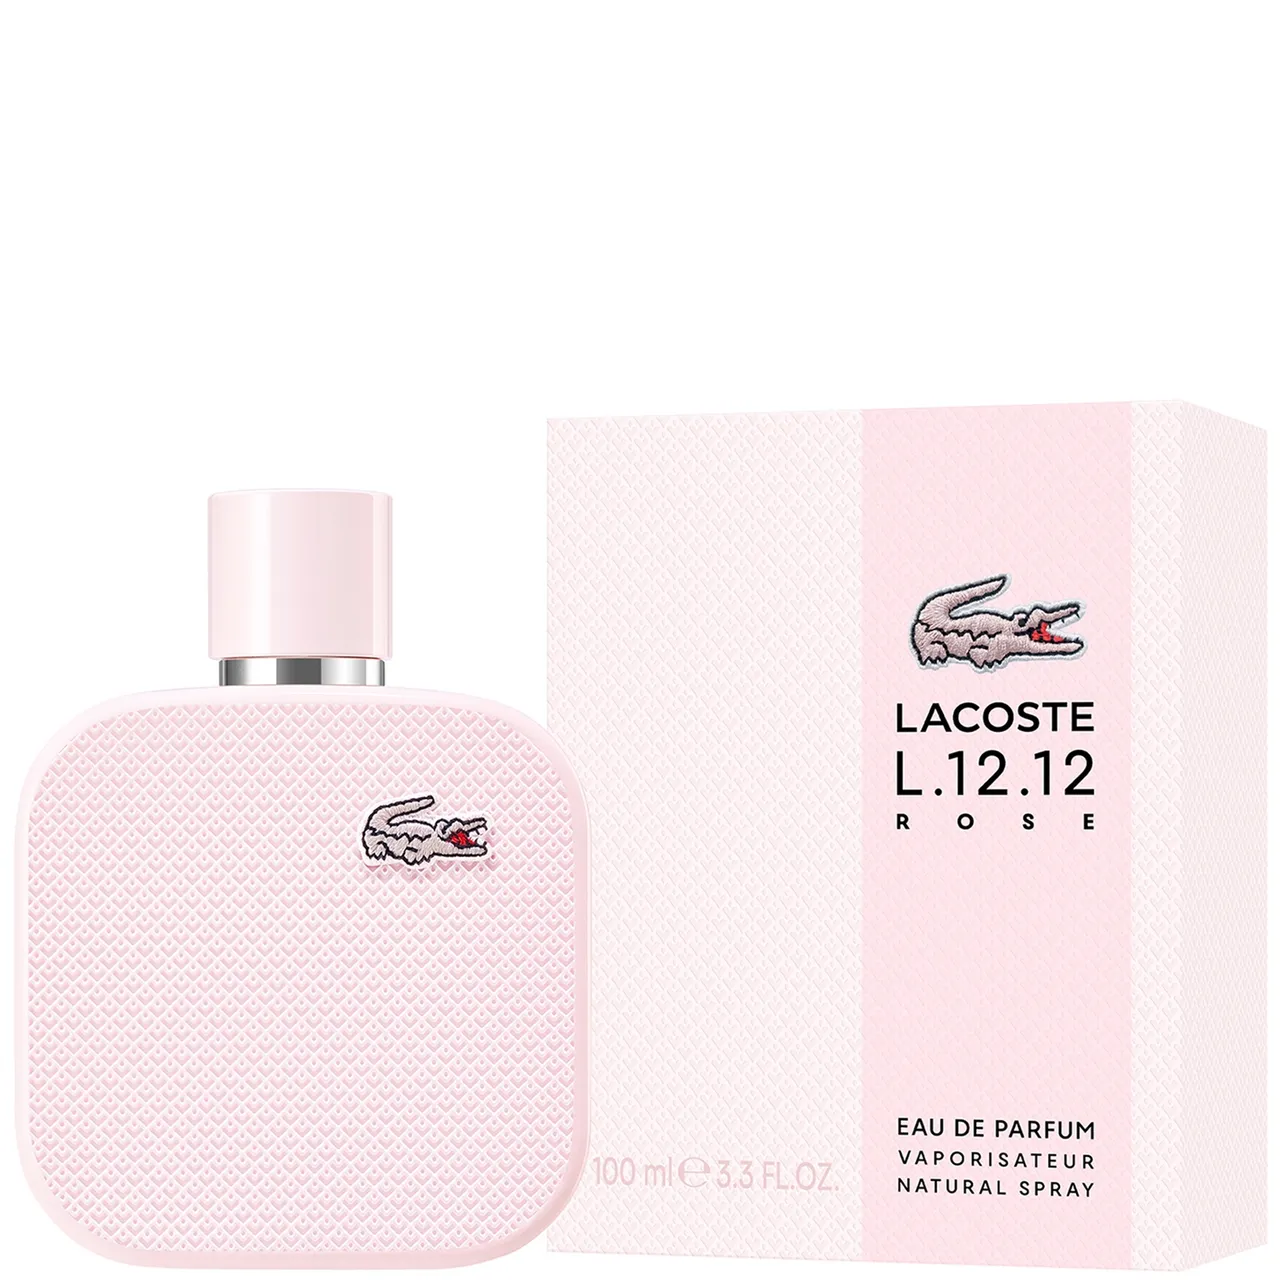 Lacoste L.12.12 Rose Eau de Parfum Spray 100ml